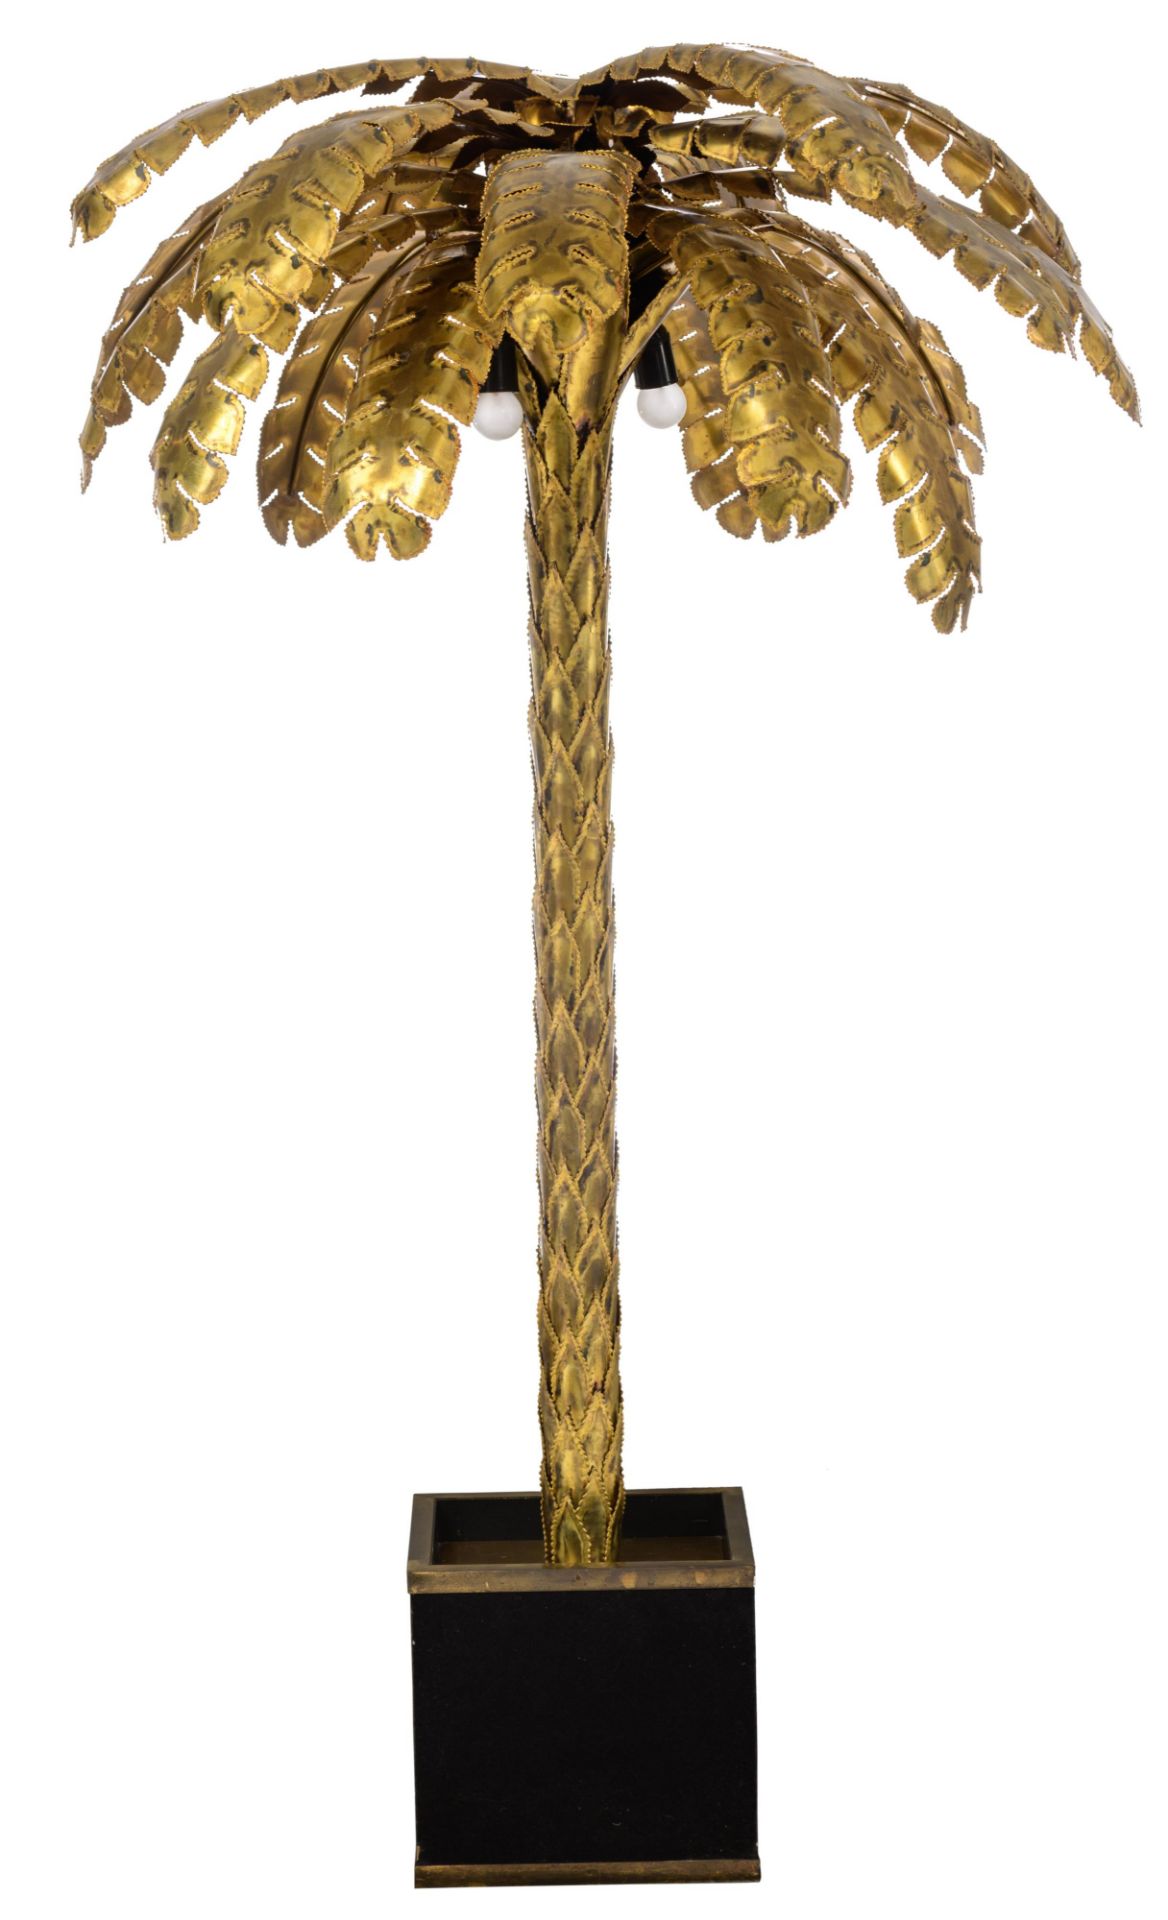 A vintage brass '70s design palm tree lamp by Maison Jansen, Paris, H 162 cm - Image 2 of 3